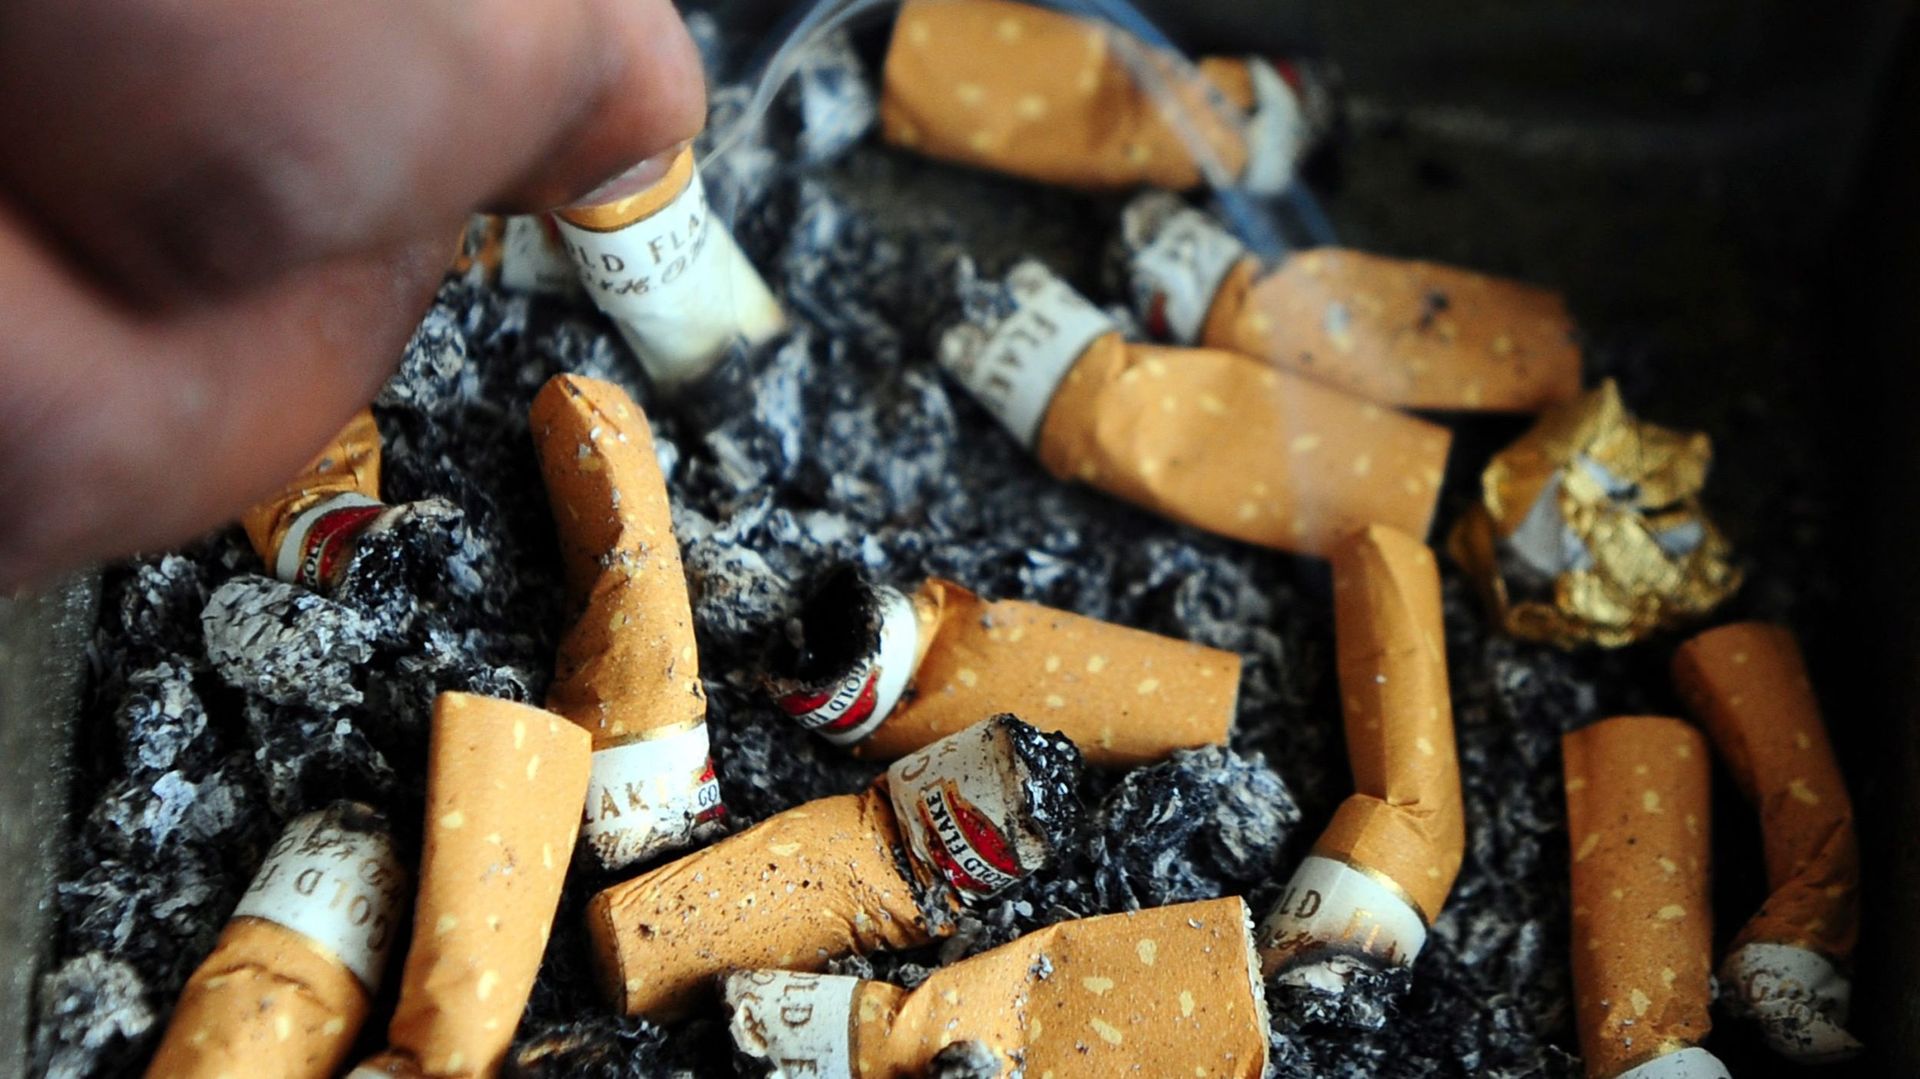 Les premières cigarettes "anti-incendie" arrivent en Europe